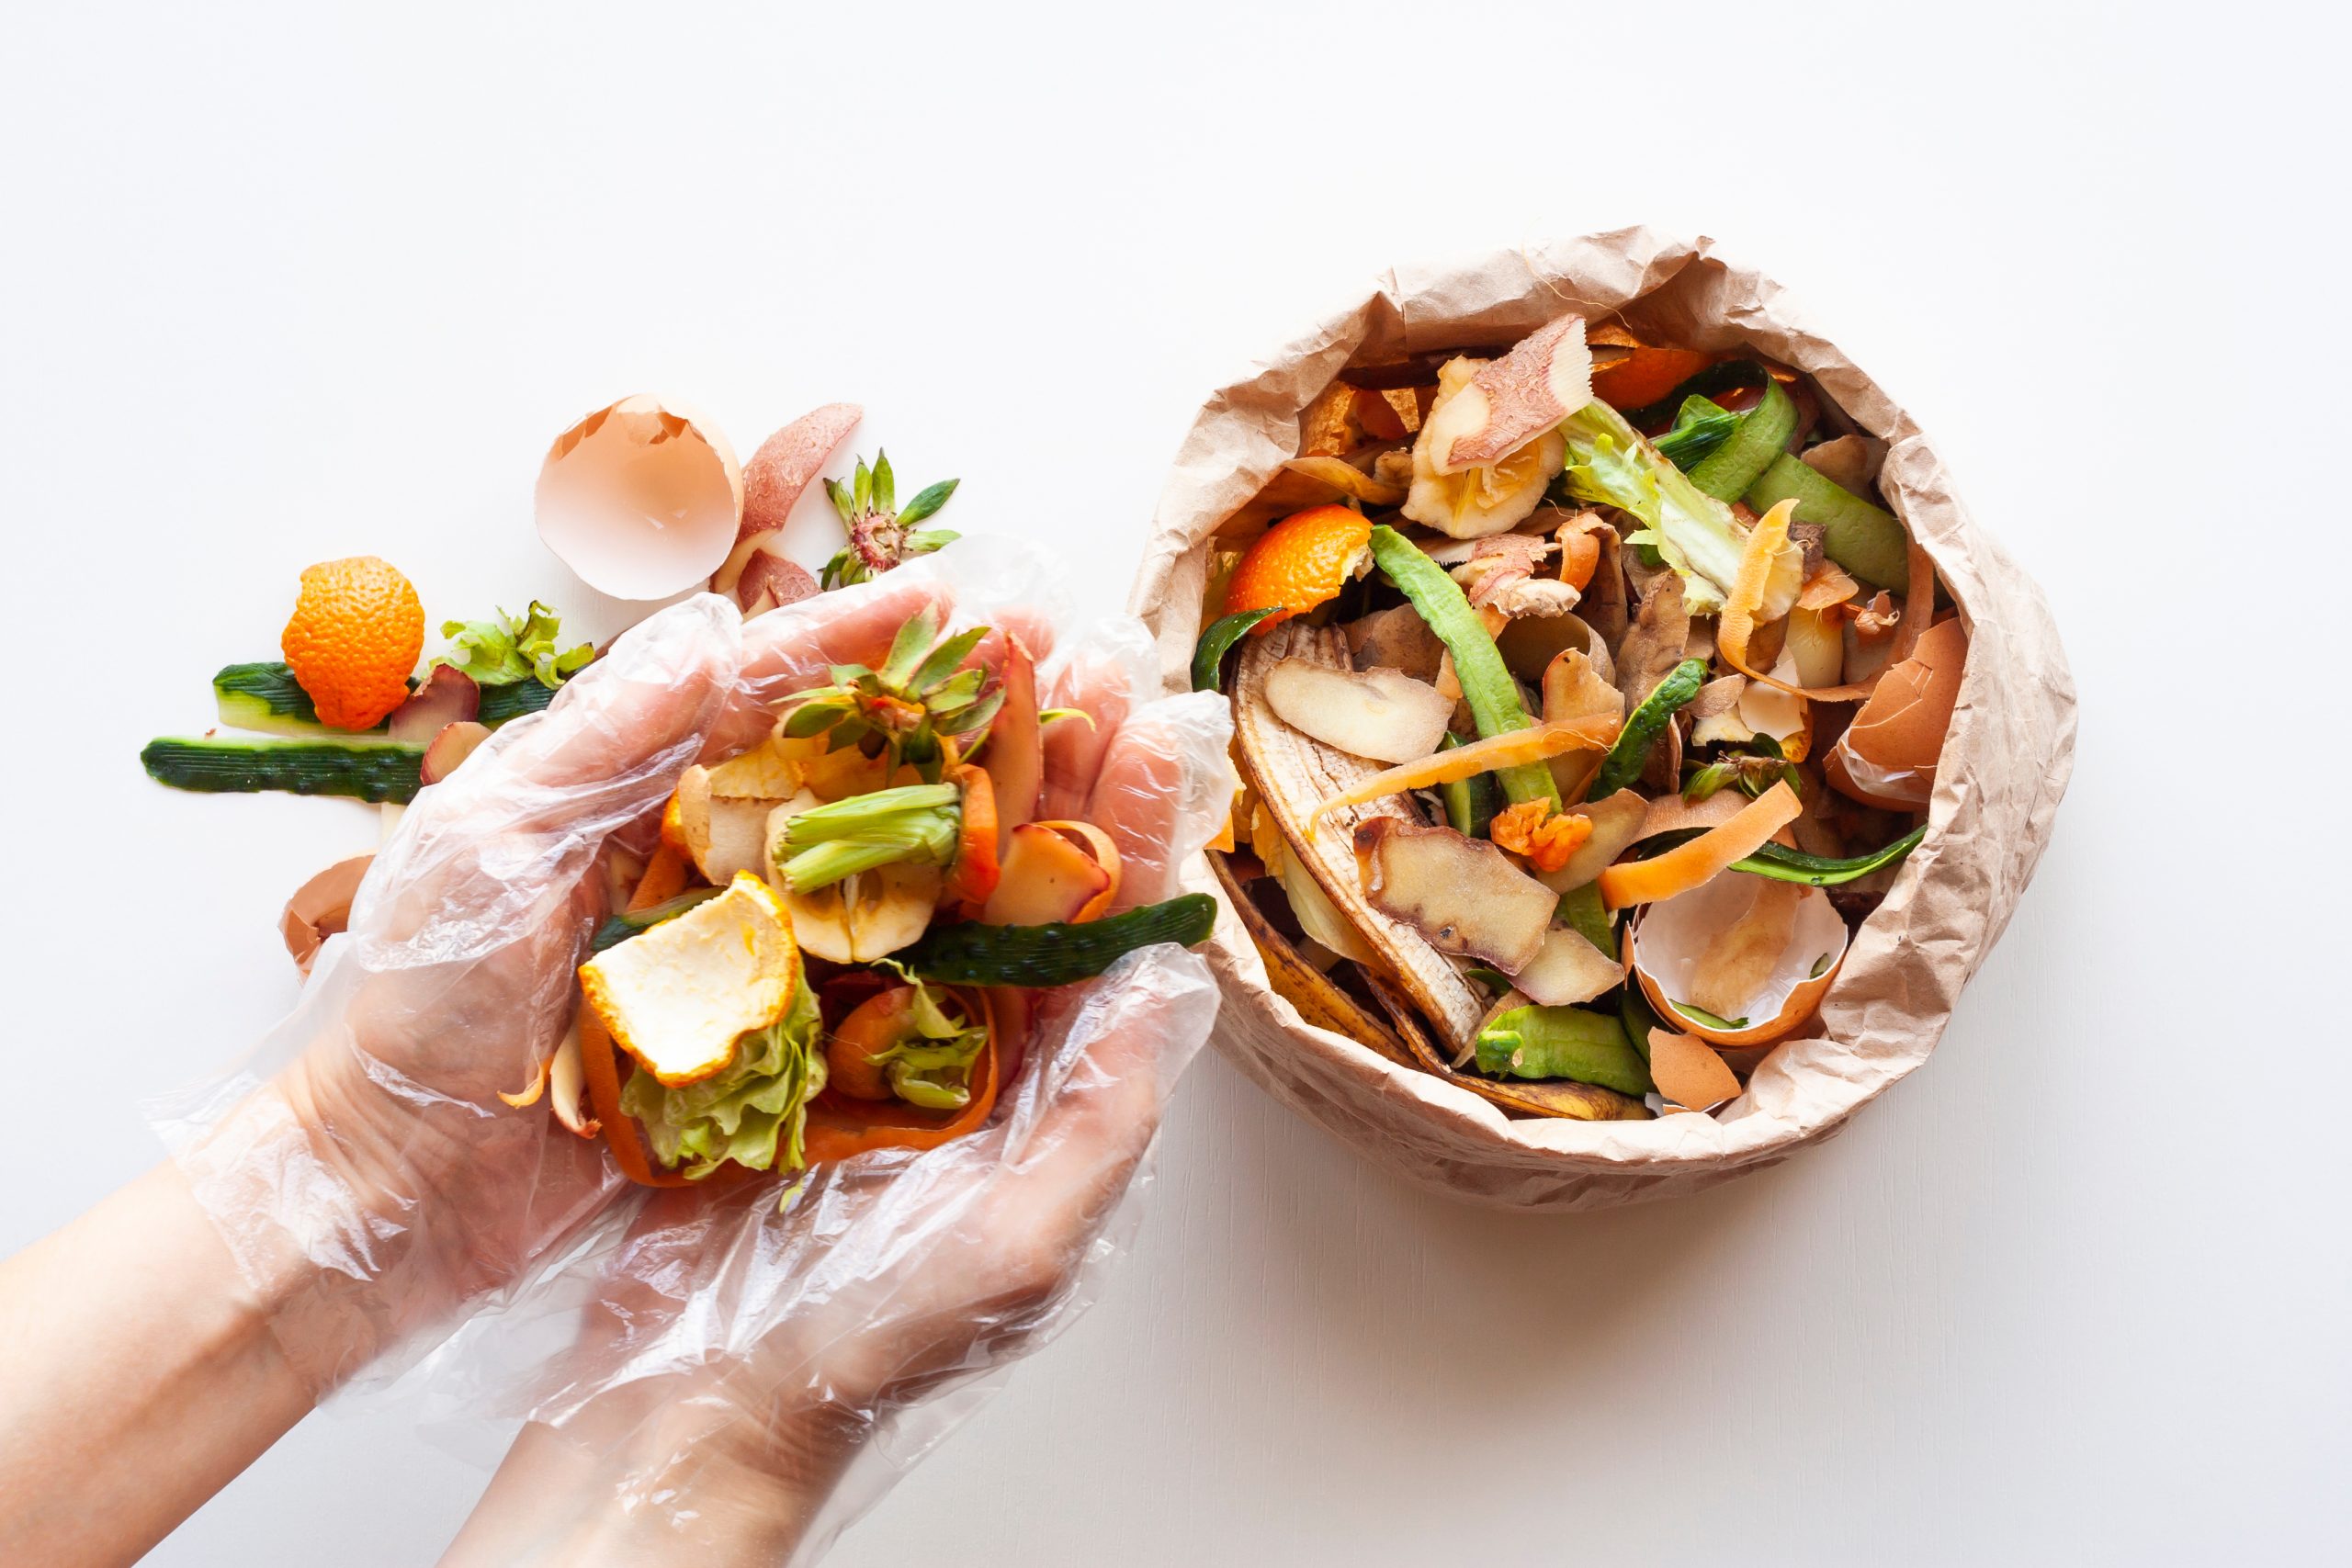 Duas mãos juntas, revestidas com luvas transparentes, com restos de alimentos, direcionada para um saco de papelão repleto de restos de alimentos.